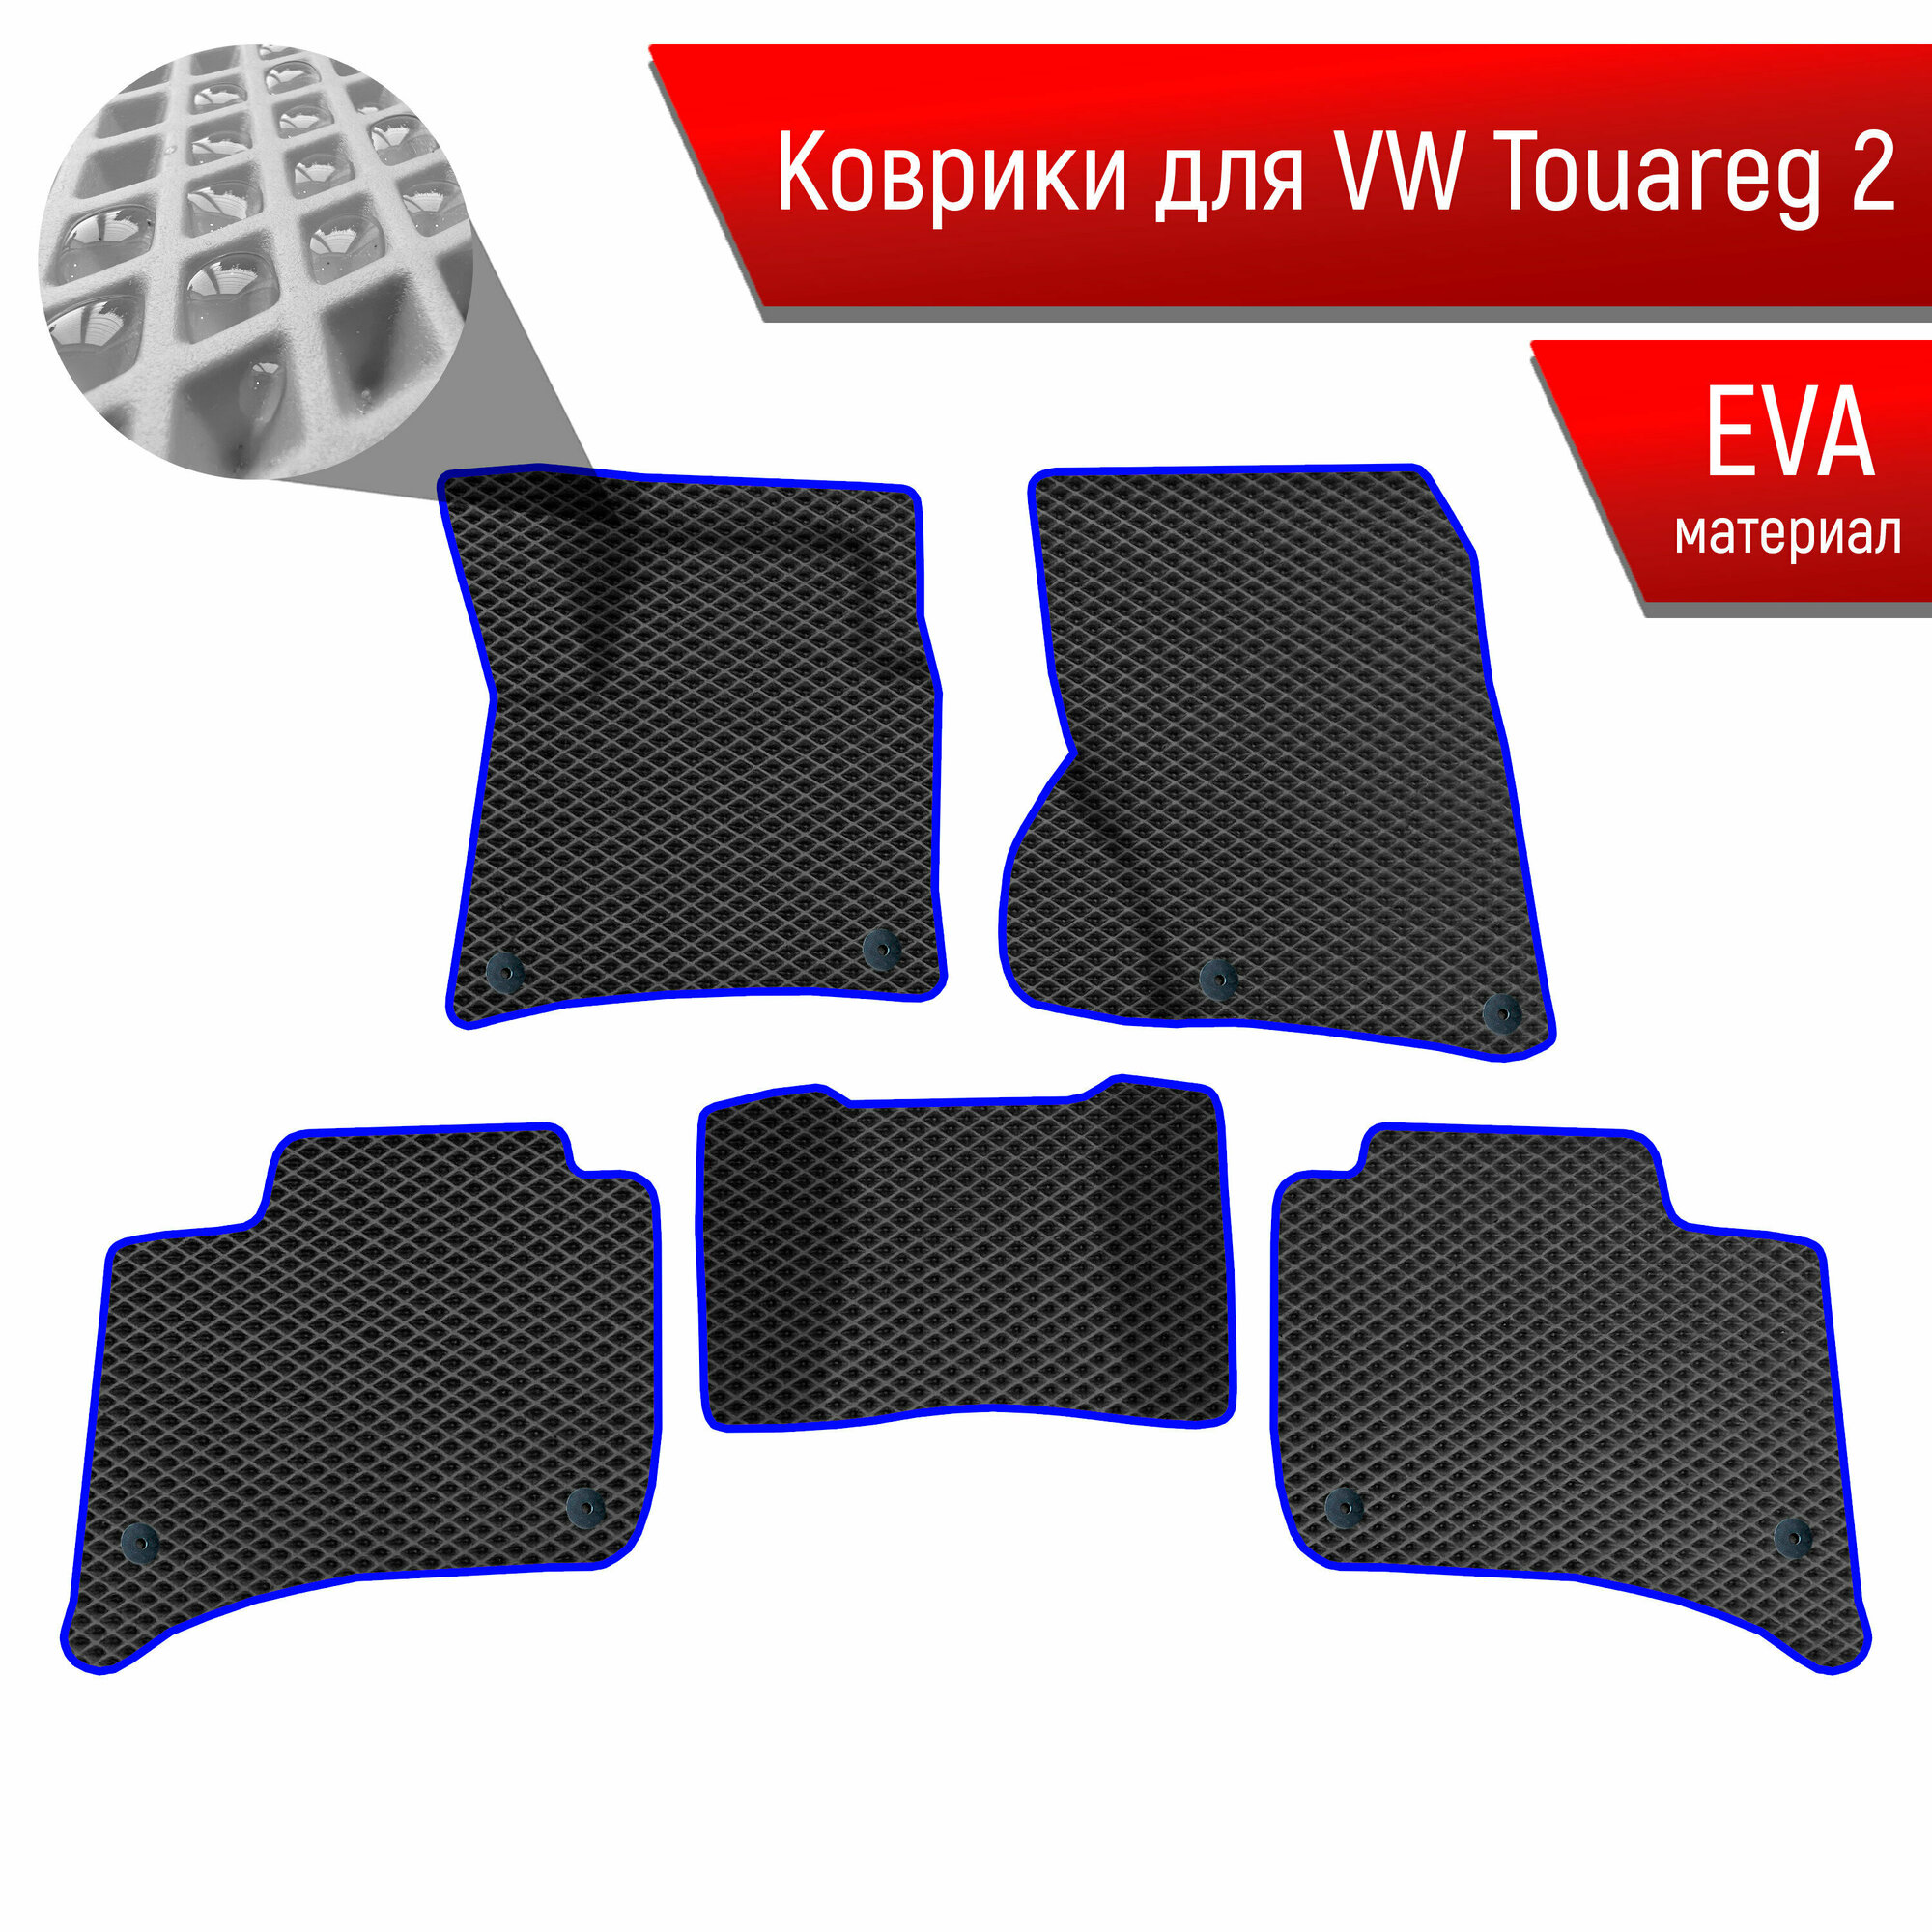 Коврики ЭВА Ромб для авто Фольцваген Таурег 2 / Volkswagen Touareg 2 2010-2014 Г. В. Коричневый с Коричневым кантом